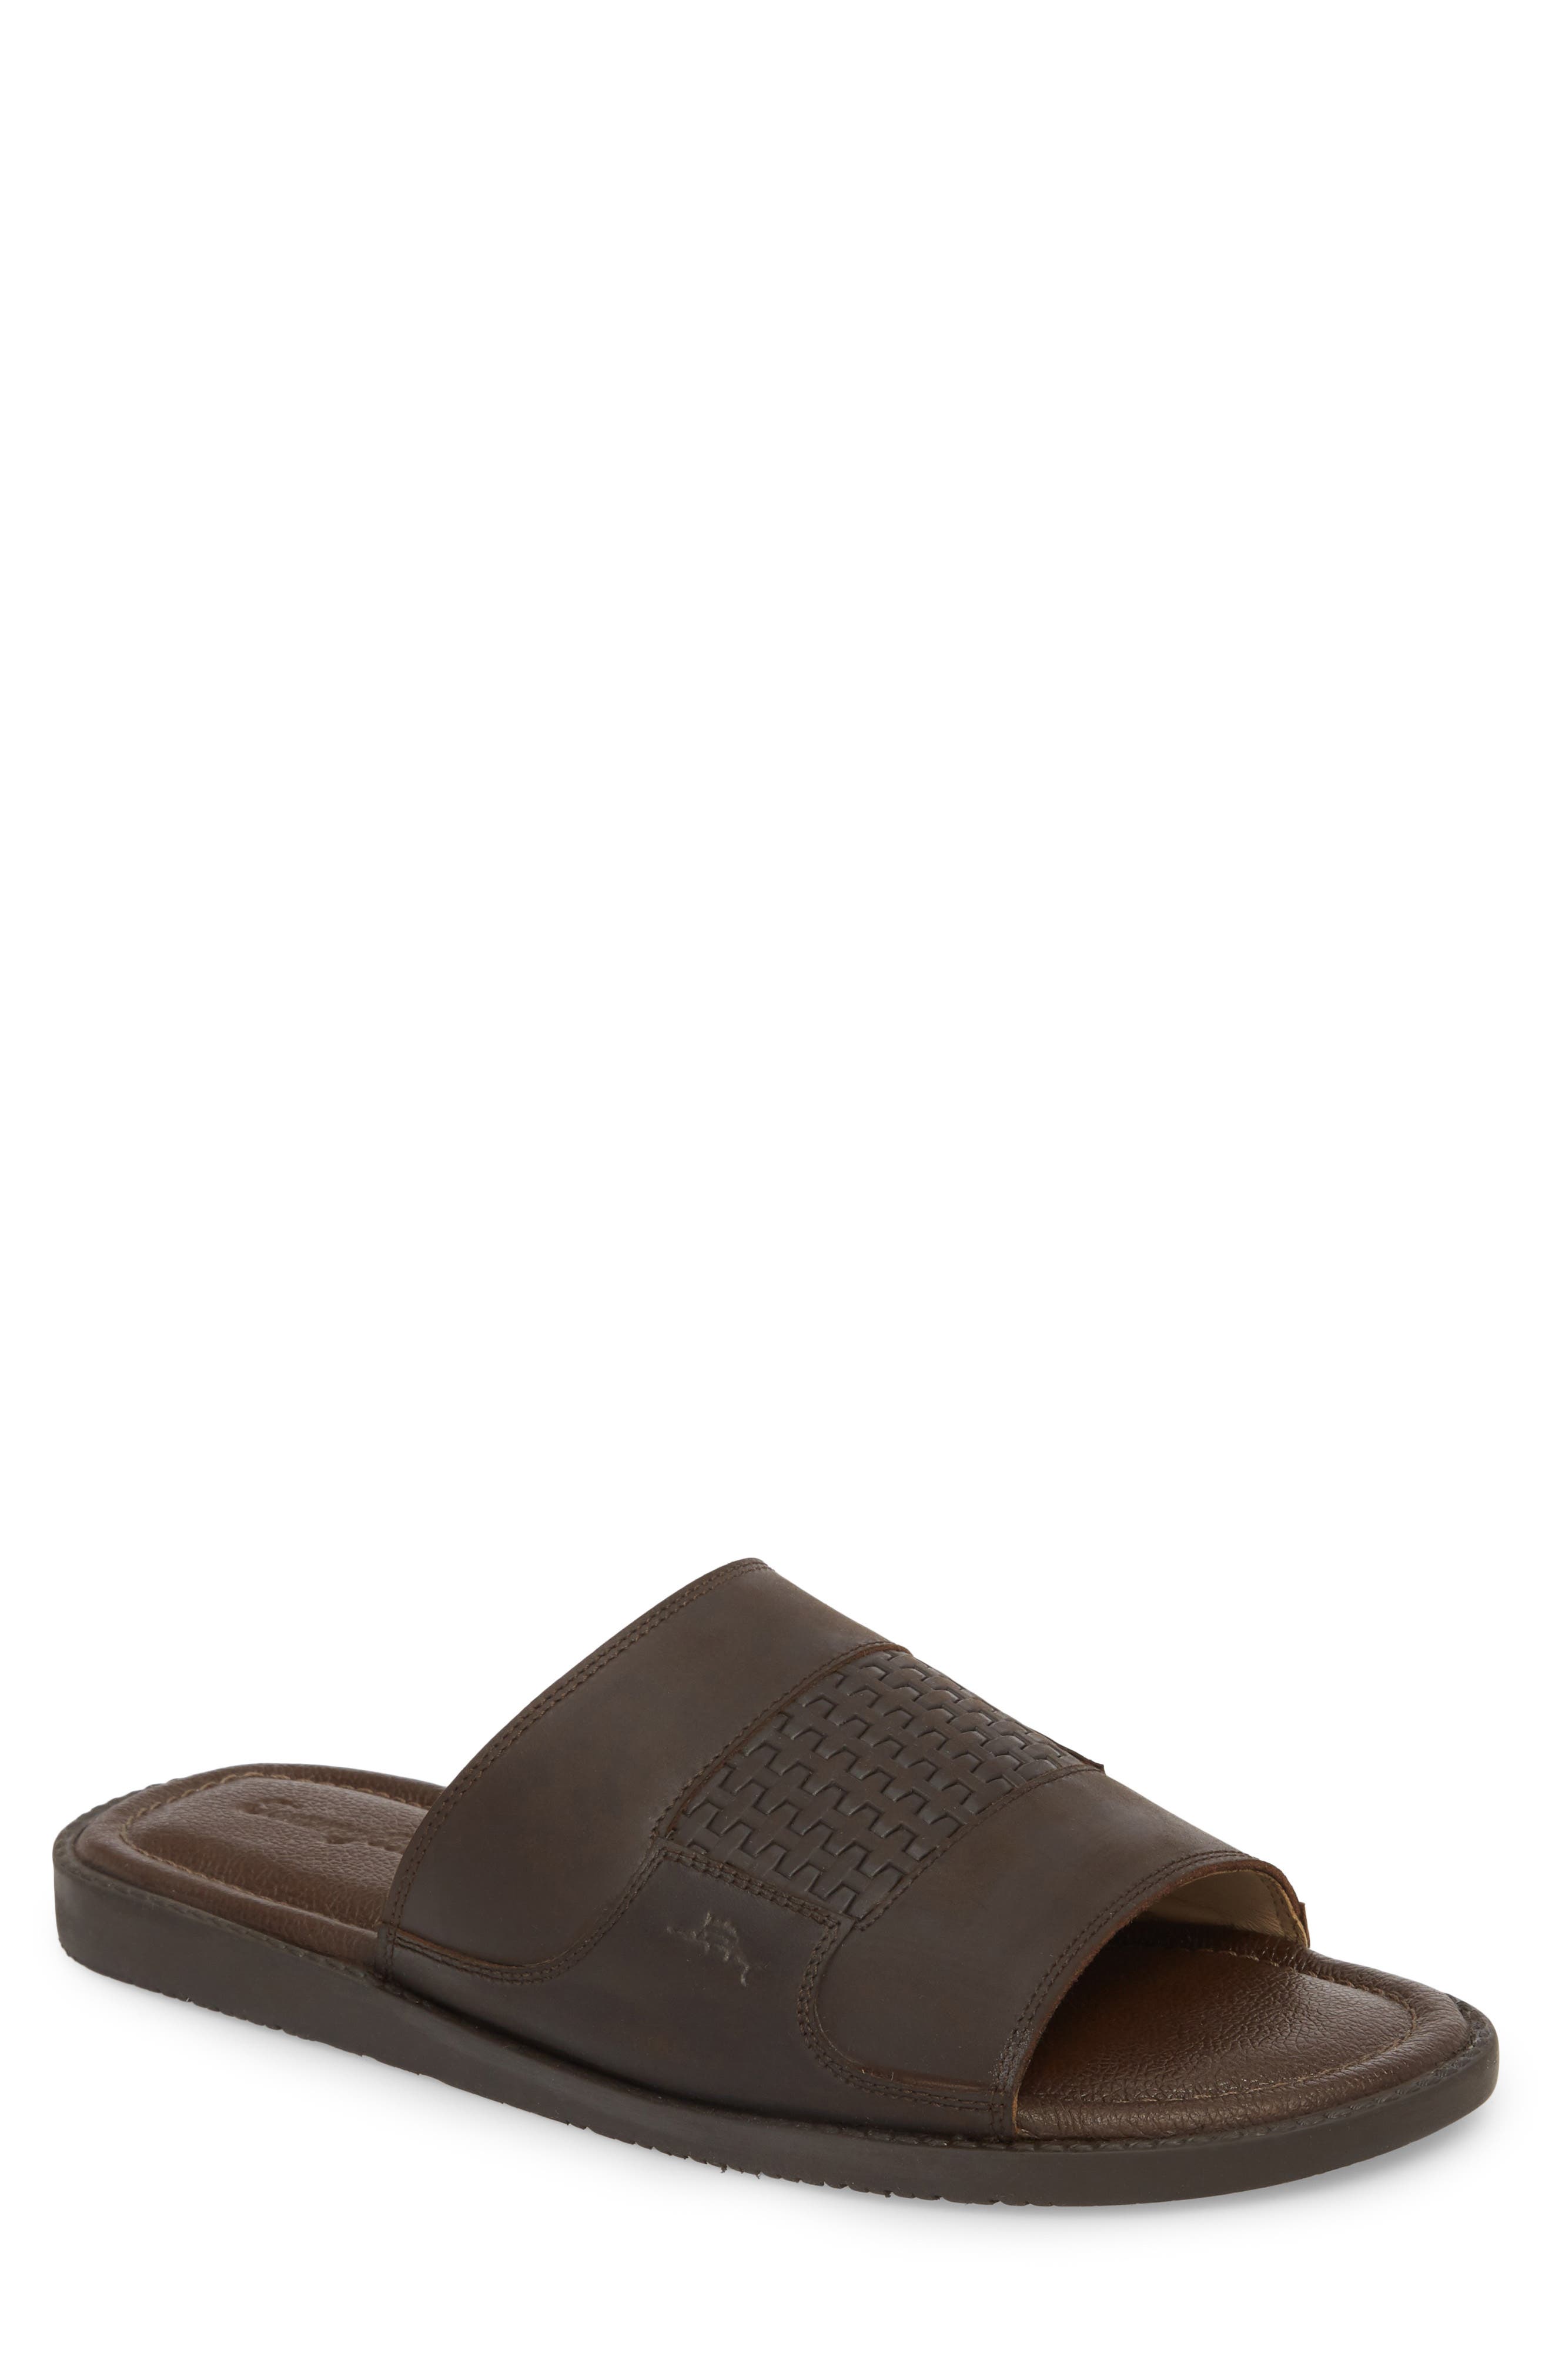 UPC 192689001086 product image for Men's Tommy Bahama Gennadi Palms Slide Sandal, Size 7 M - Brown | upcitemdb.com